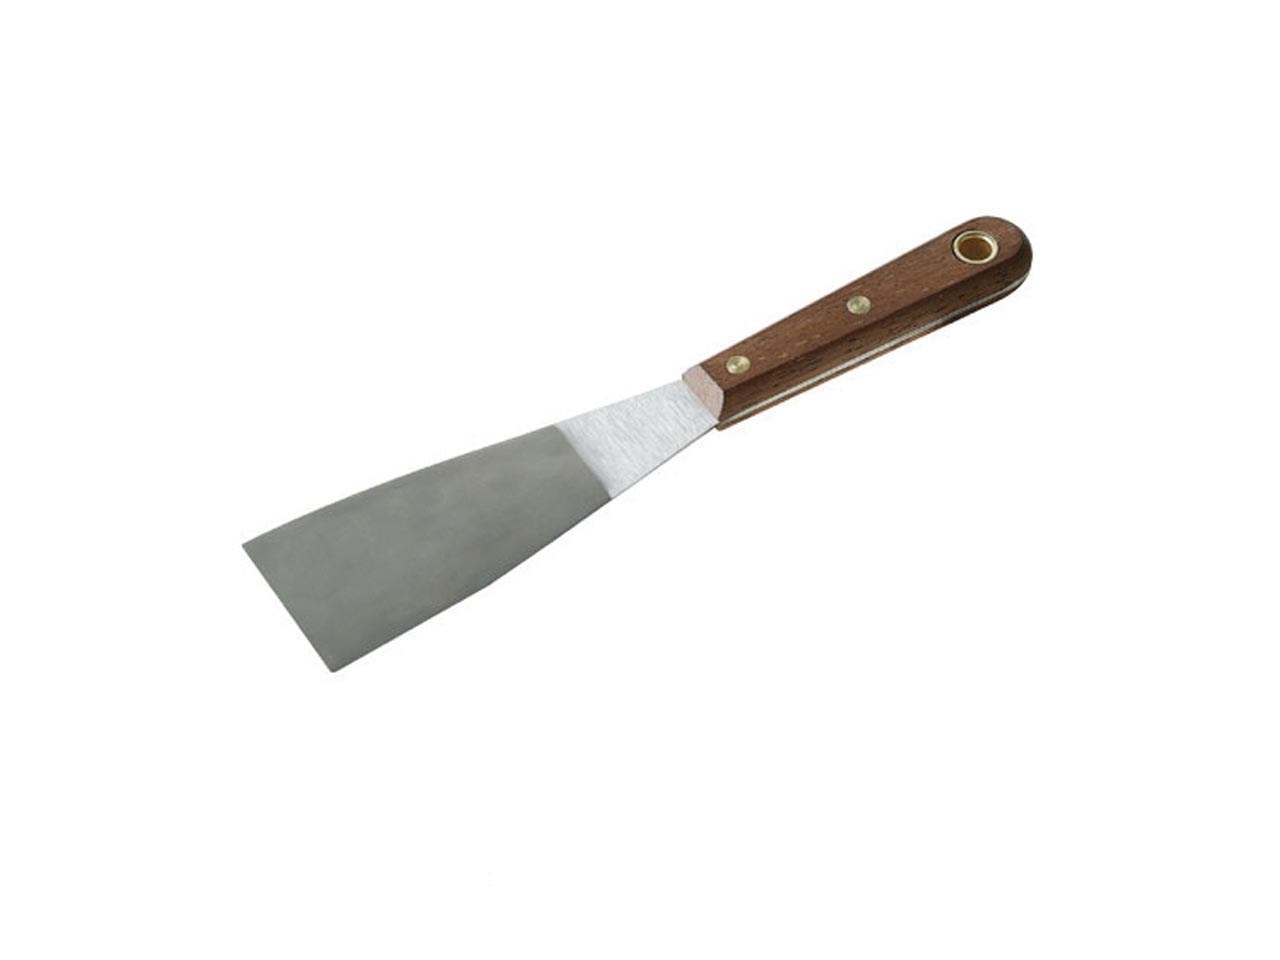 Silverline 633605 Filling Knife 75mm